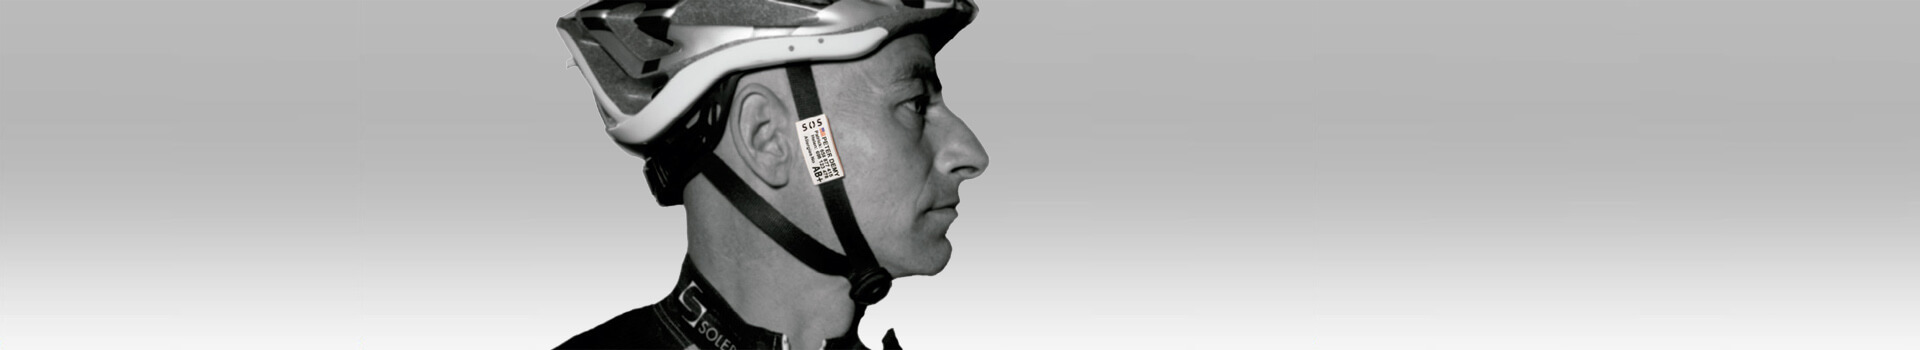 Bezpečnostní identifikační štítek pro cyklisty